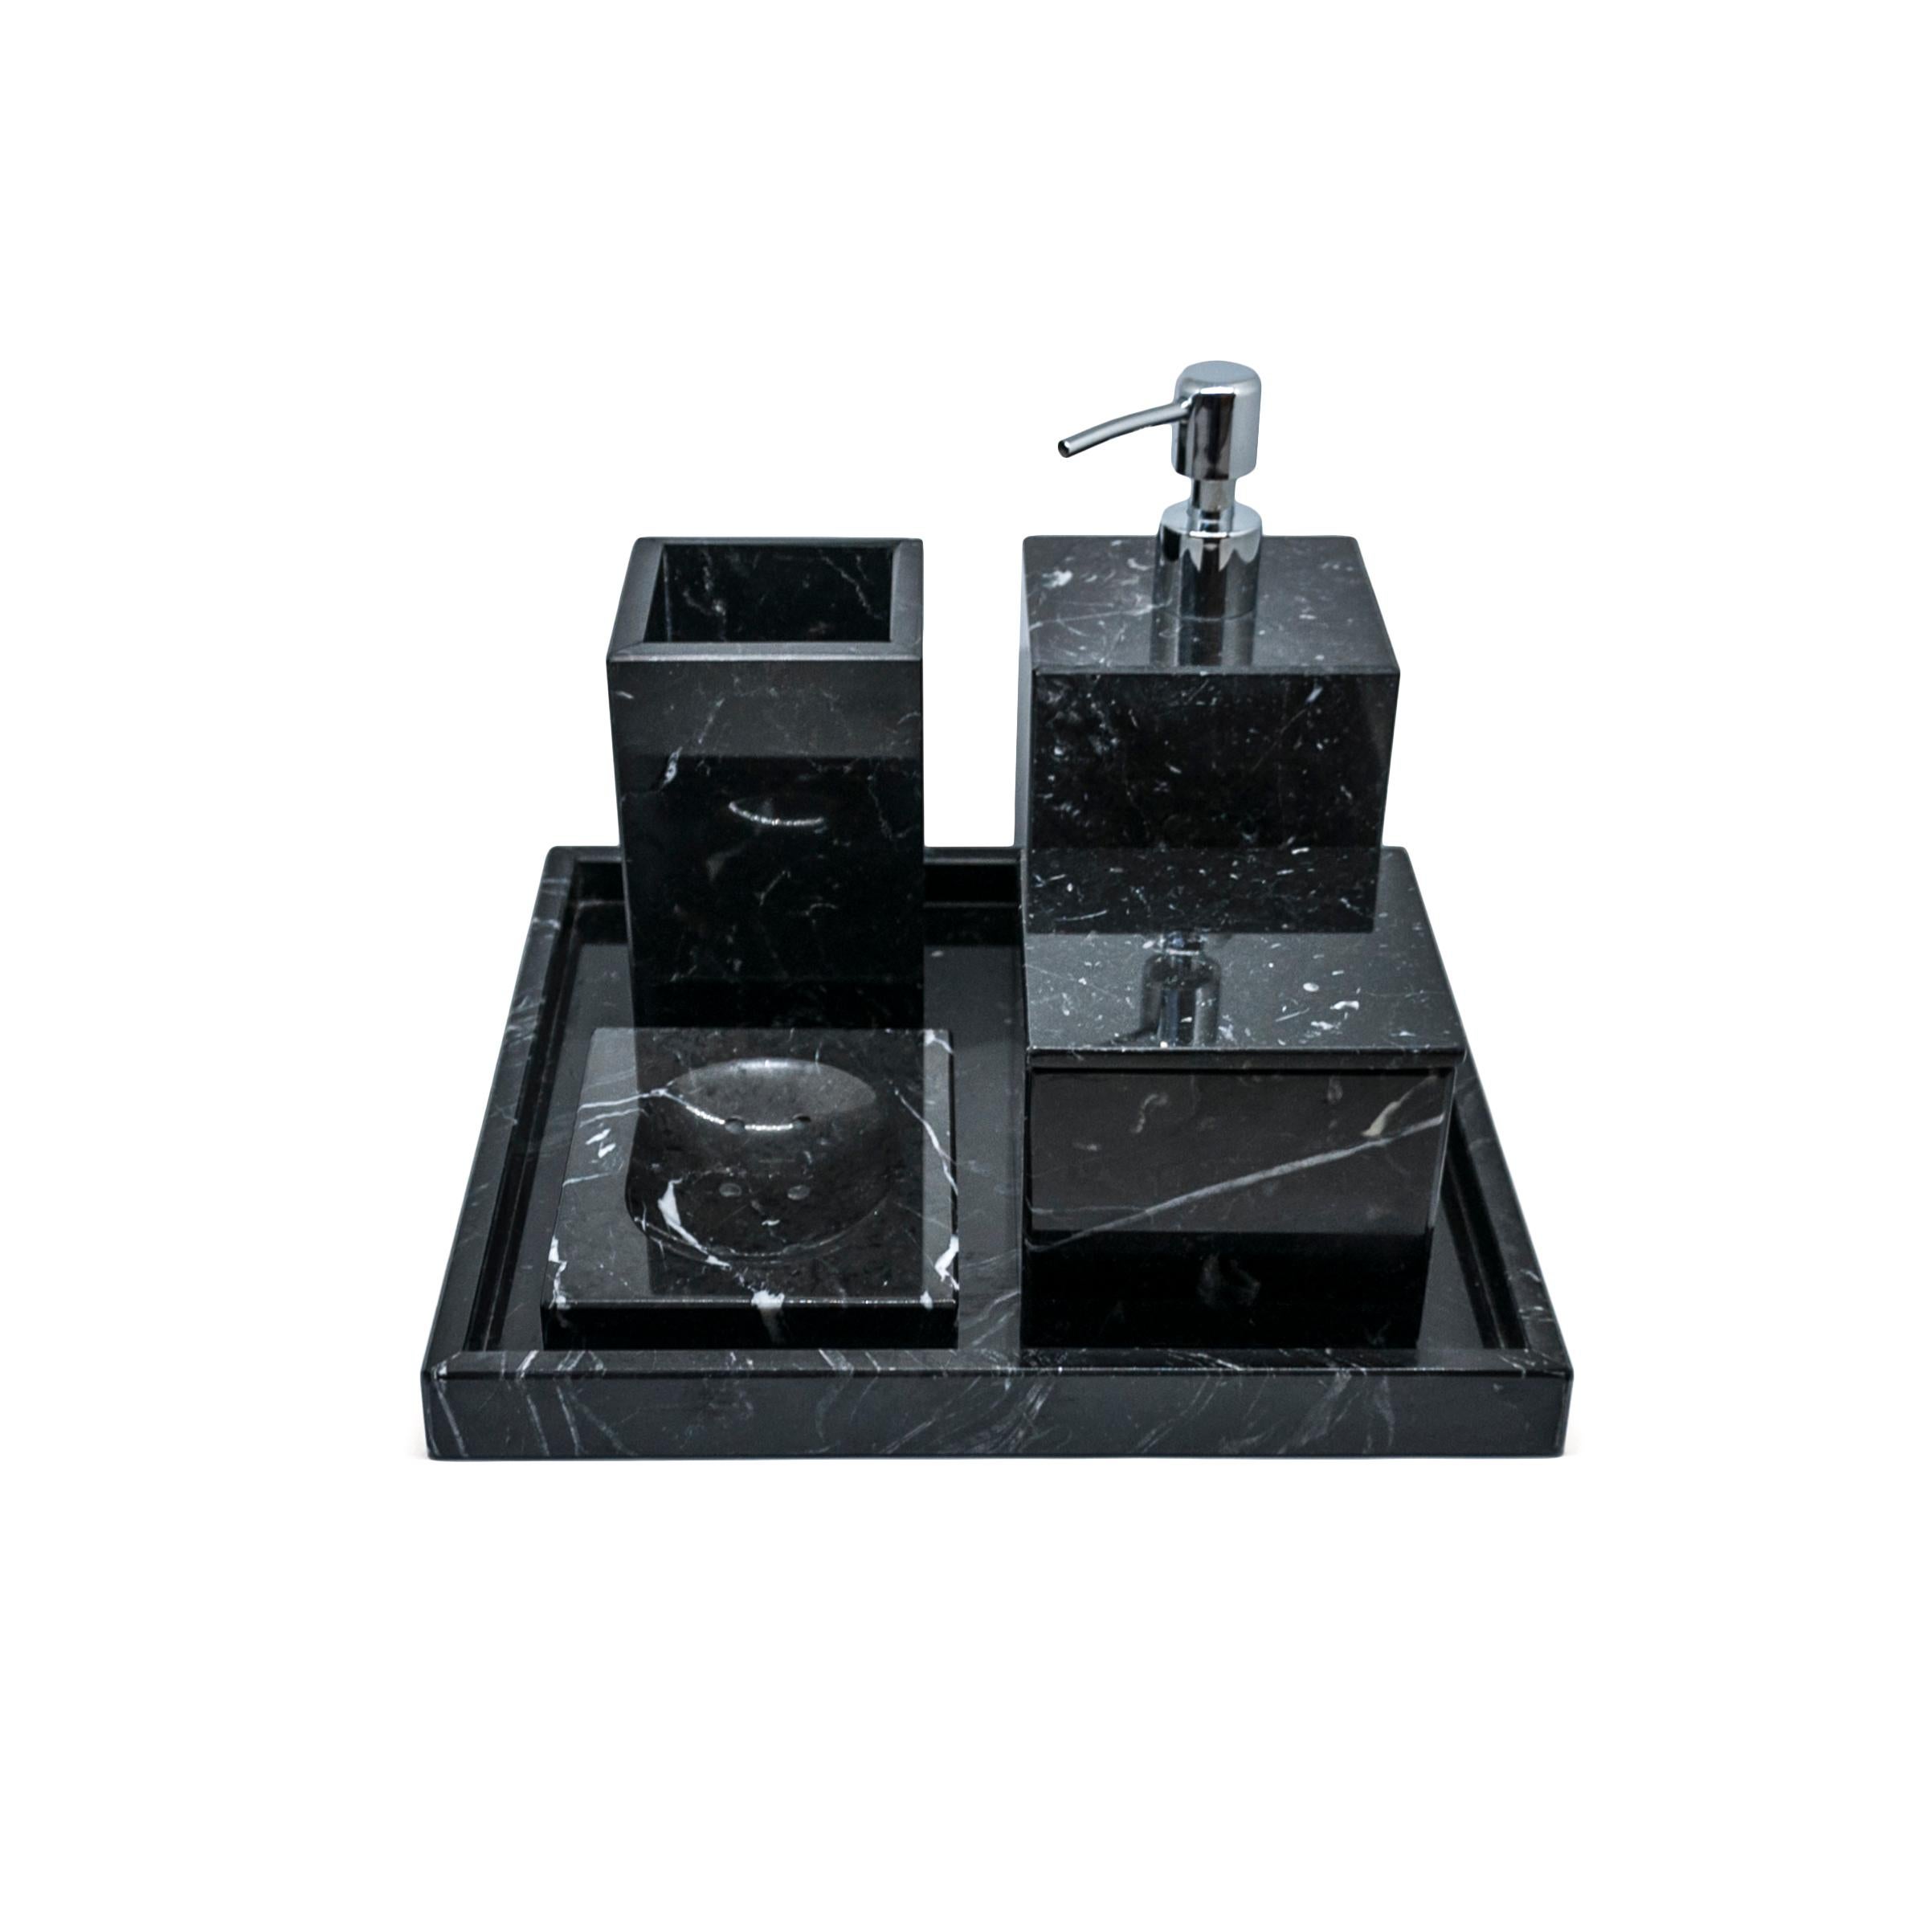 Ein komplettes quadratisches Set für das Badezimmer aus schwarzem Marquina-Marmor, bestehend aus: einem Seifenspender (9 x 9 x 19 cm), einer Seifenschale (10 x 13 x 2 cm), einem Zahnbürstenhalter (8,5 x 8,5 x 12 cm), einem Dosenhalter mit Deckel